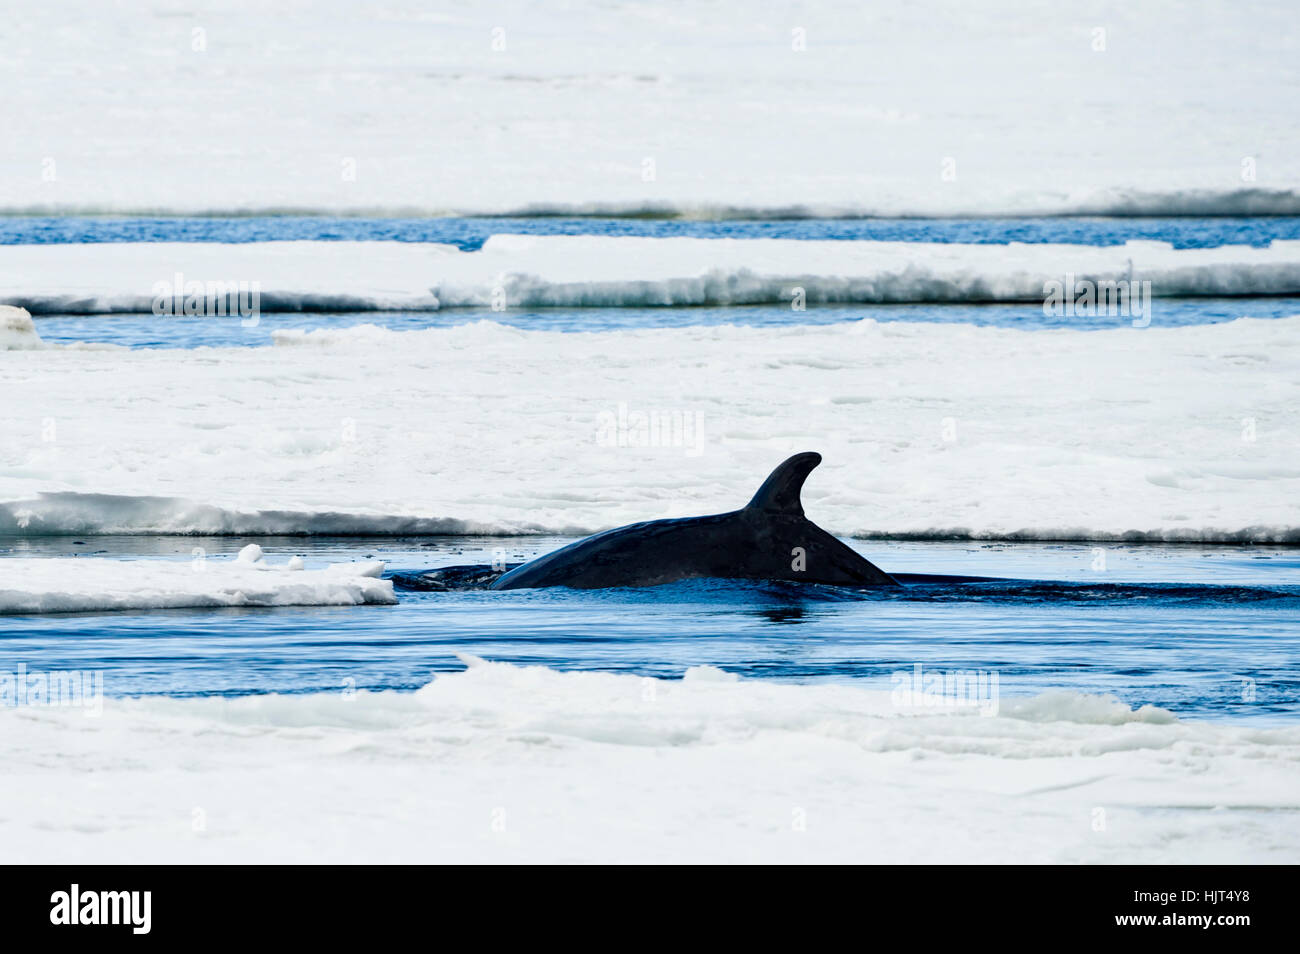 La aleta dorsal de una Ballena Minke nadando en un agujero en el hielo del mar. Foto de stock